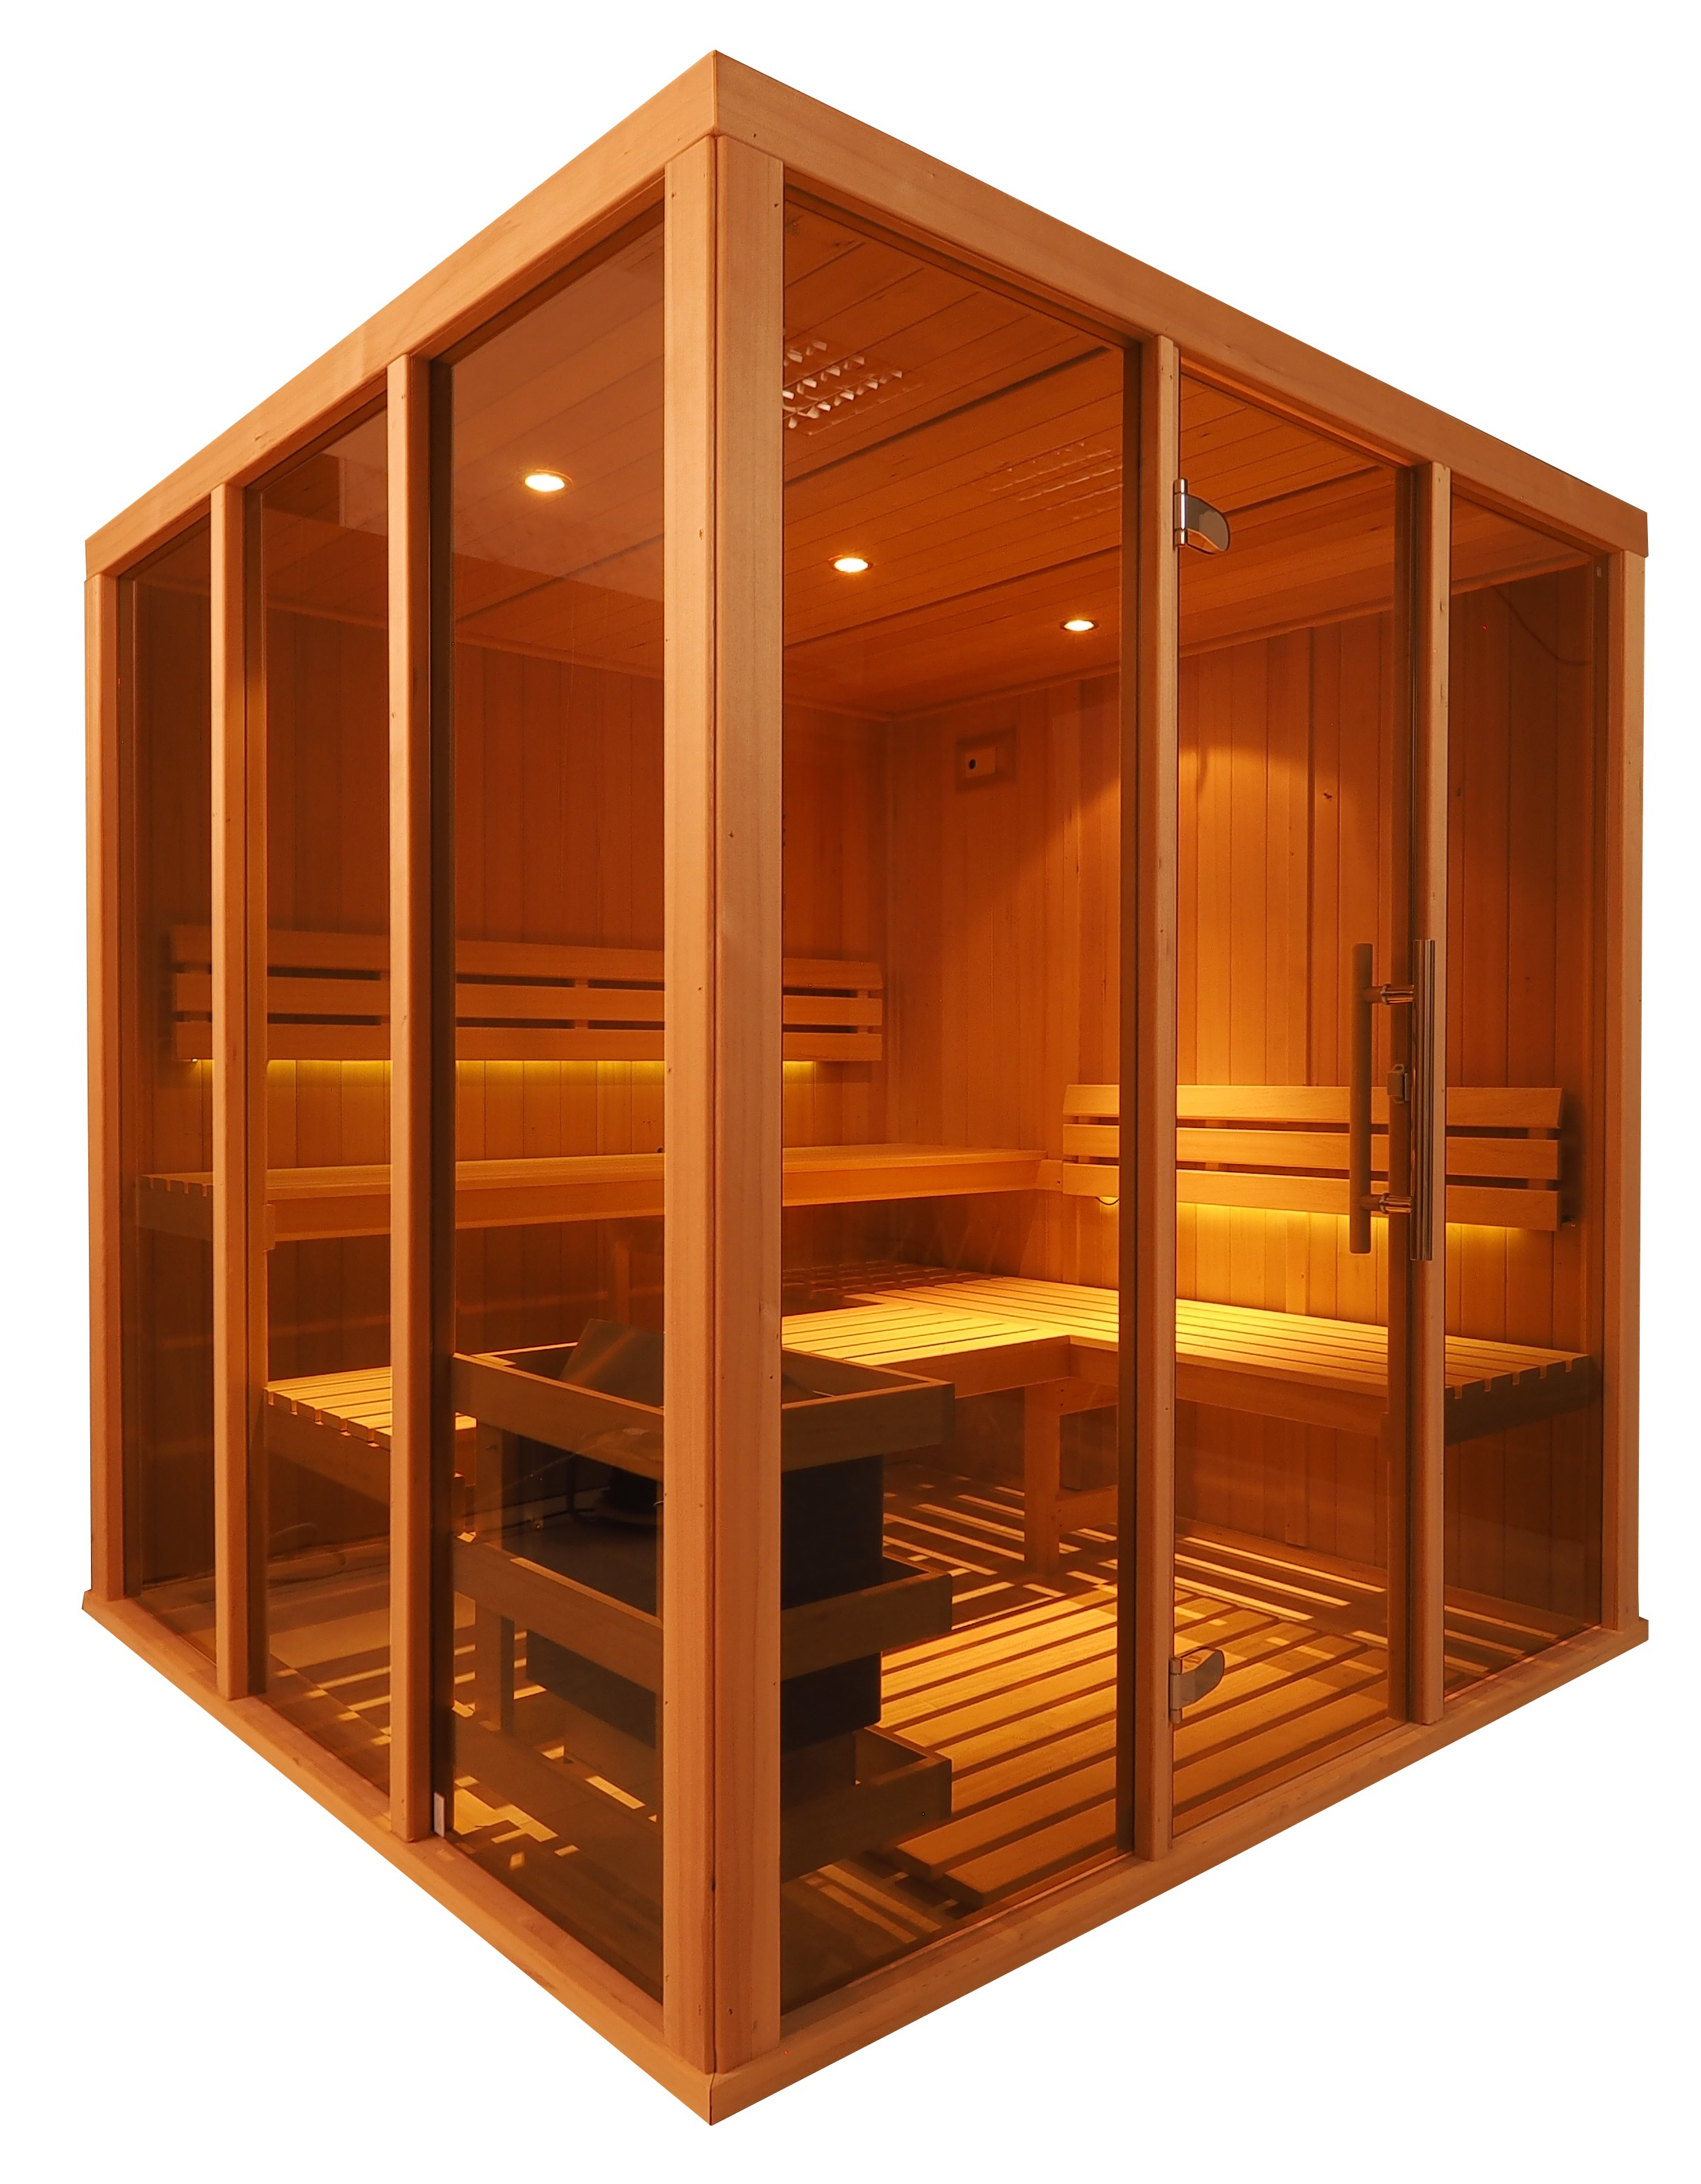 Cabina de sauna finlandesa Vision 4-5 Personas – V3030